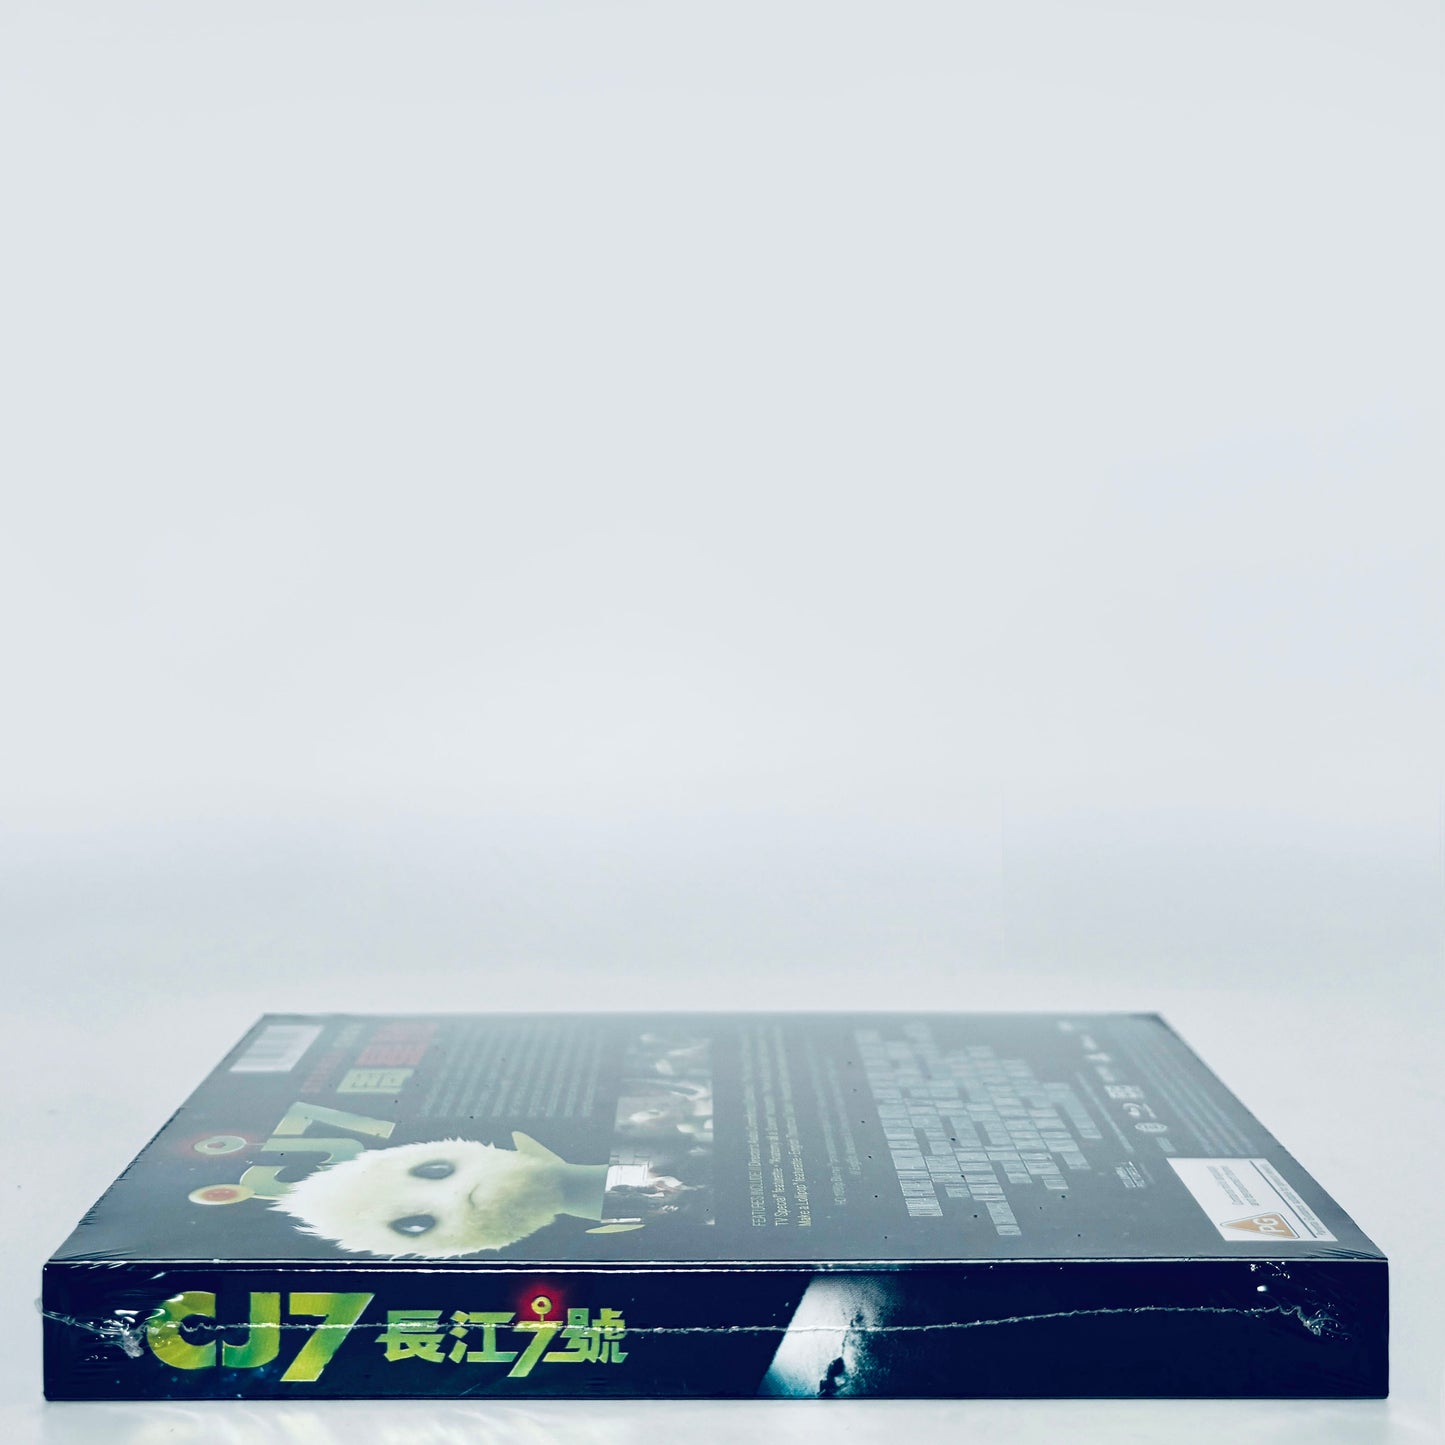 CJ7 Blu-ray Stephen Chow Limited Region B Blu-ray 88 Films UK CJ 7 Alien